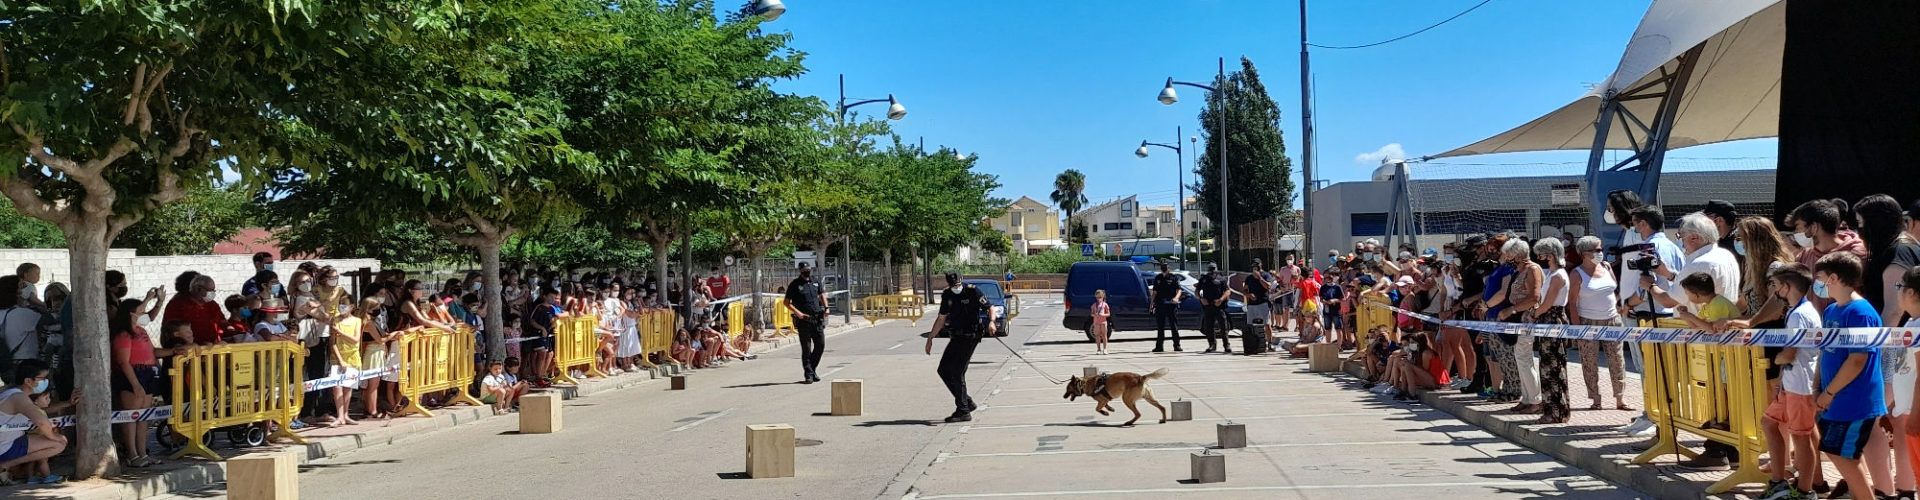 La Policia Local de Vinaròs muestra sus “poderes” al público infantil